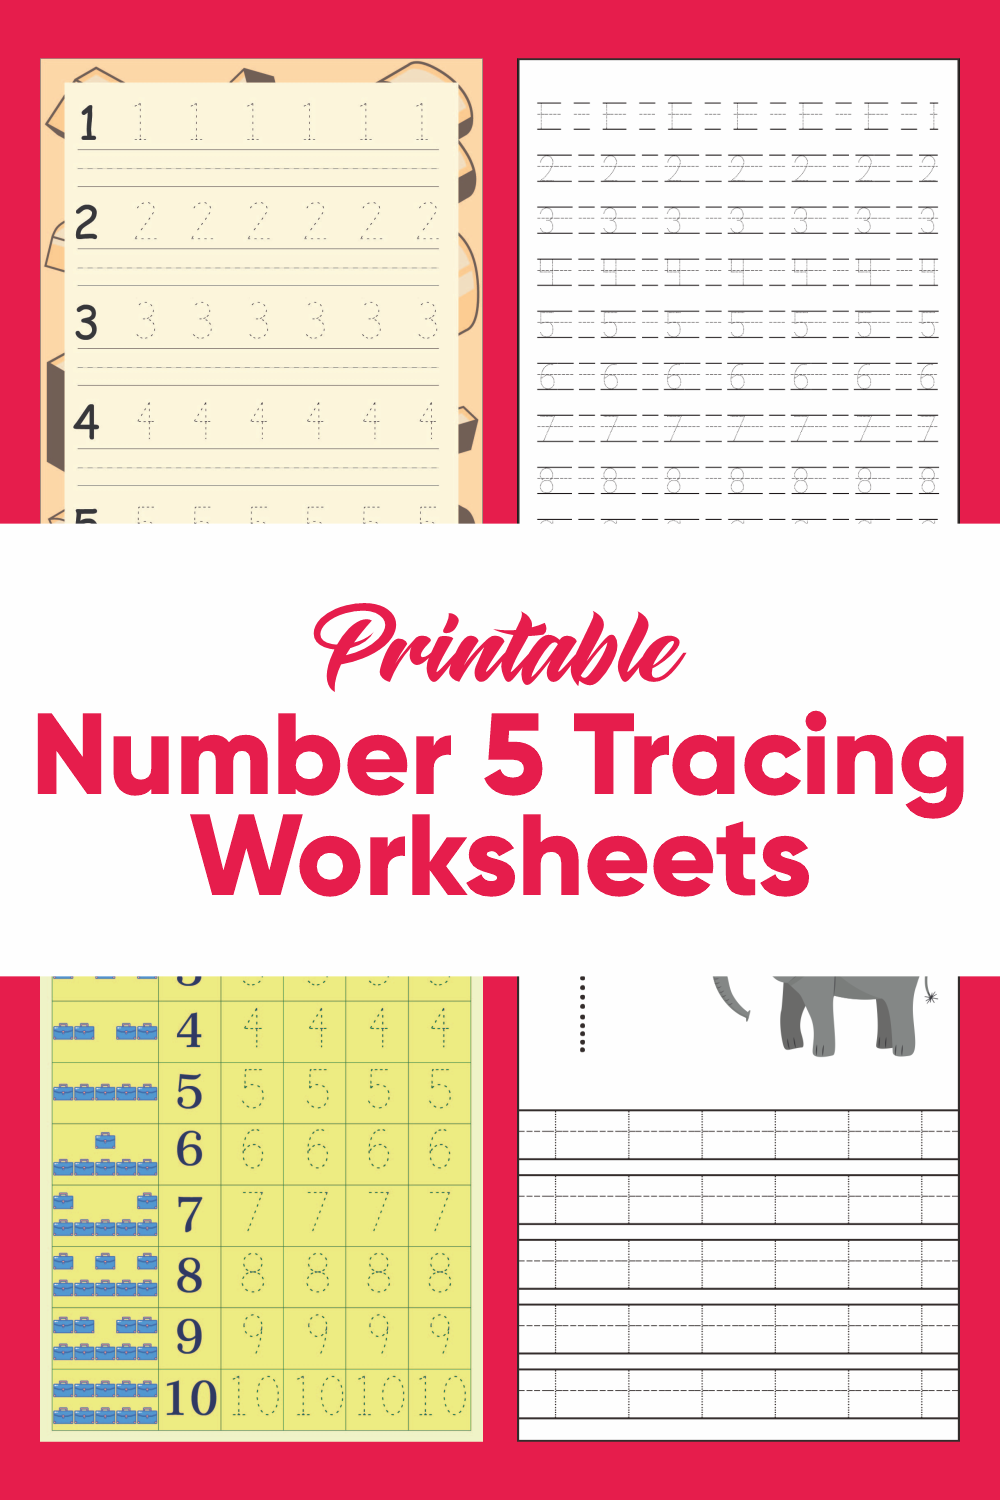 Printable Number 5 Tracing Worksheets